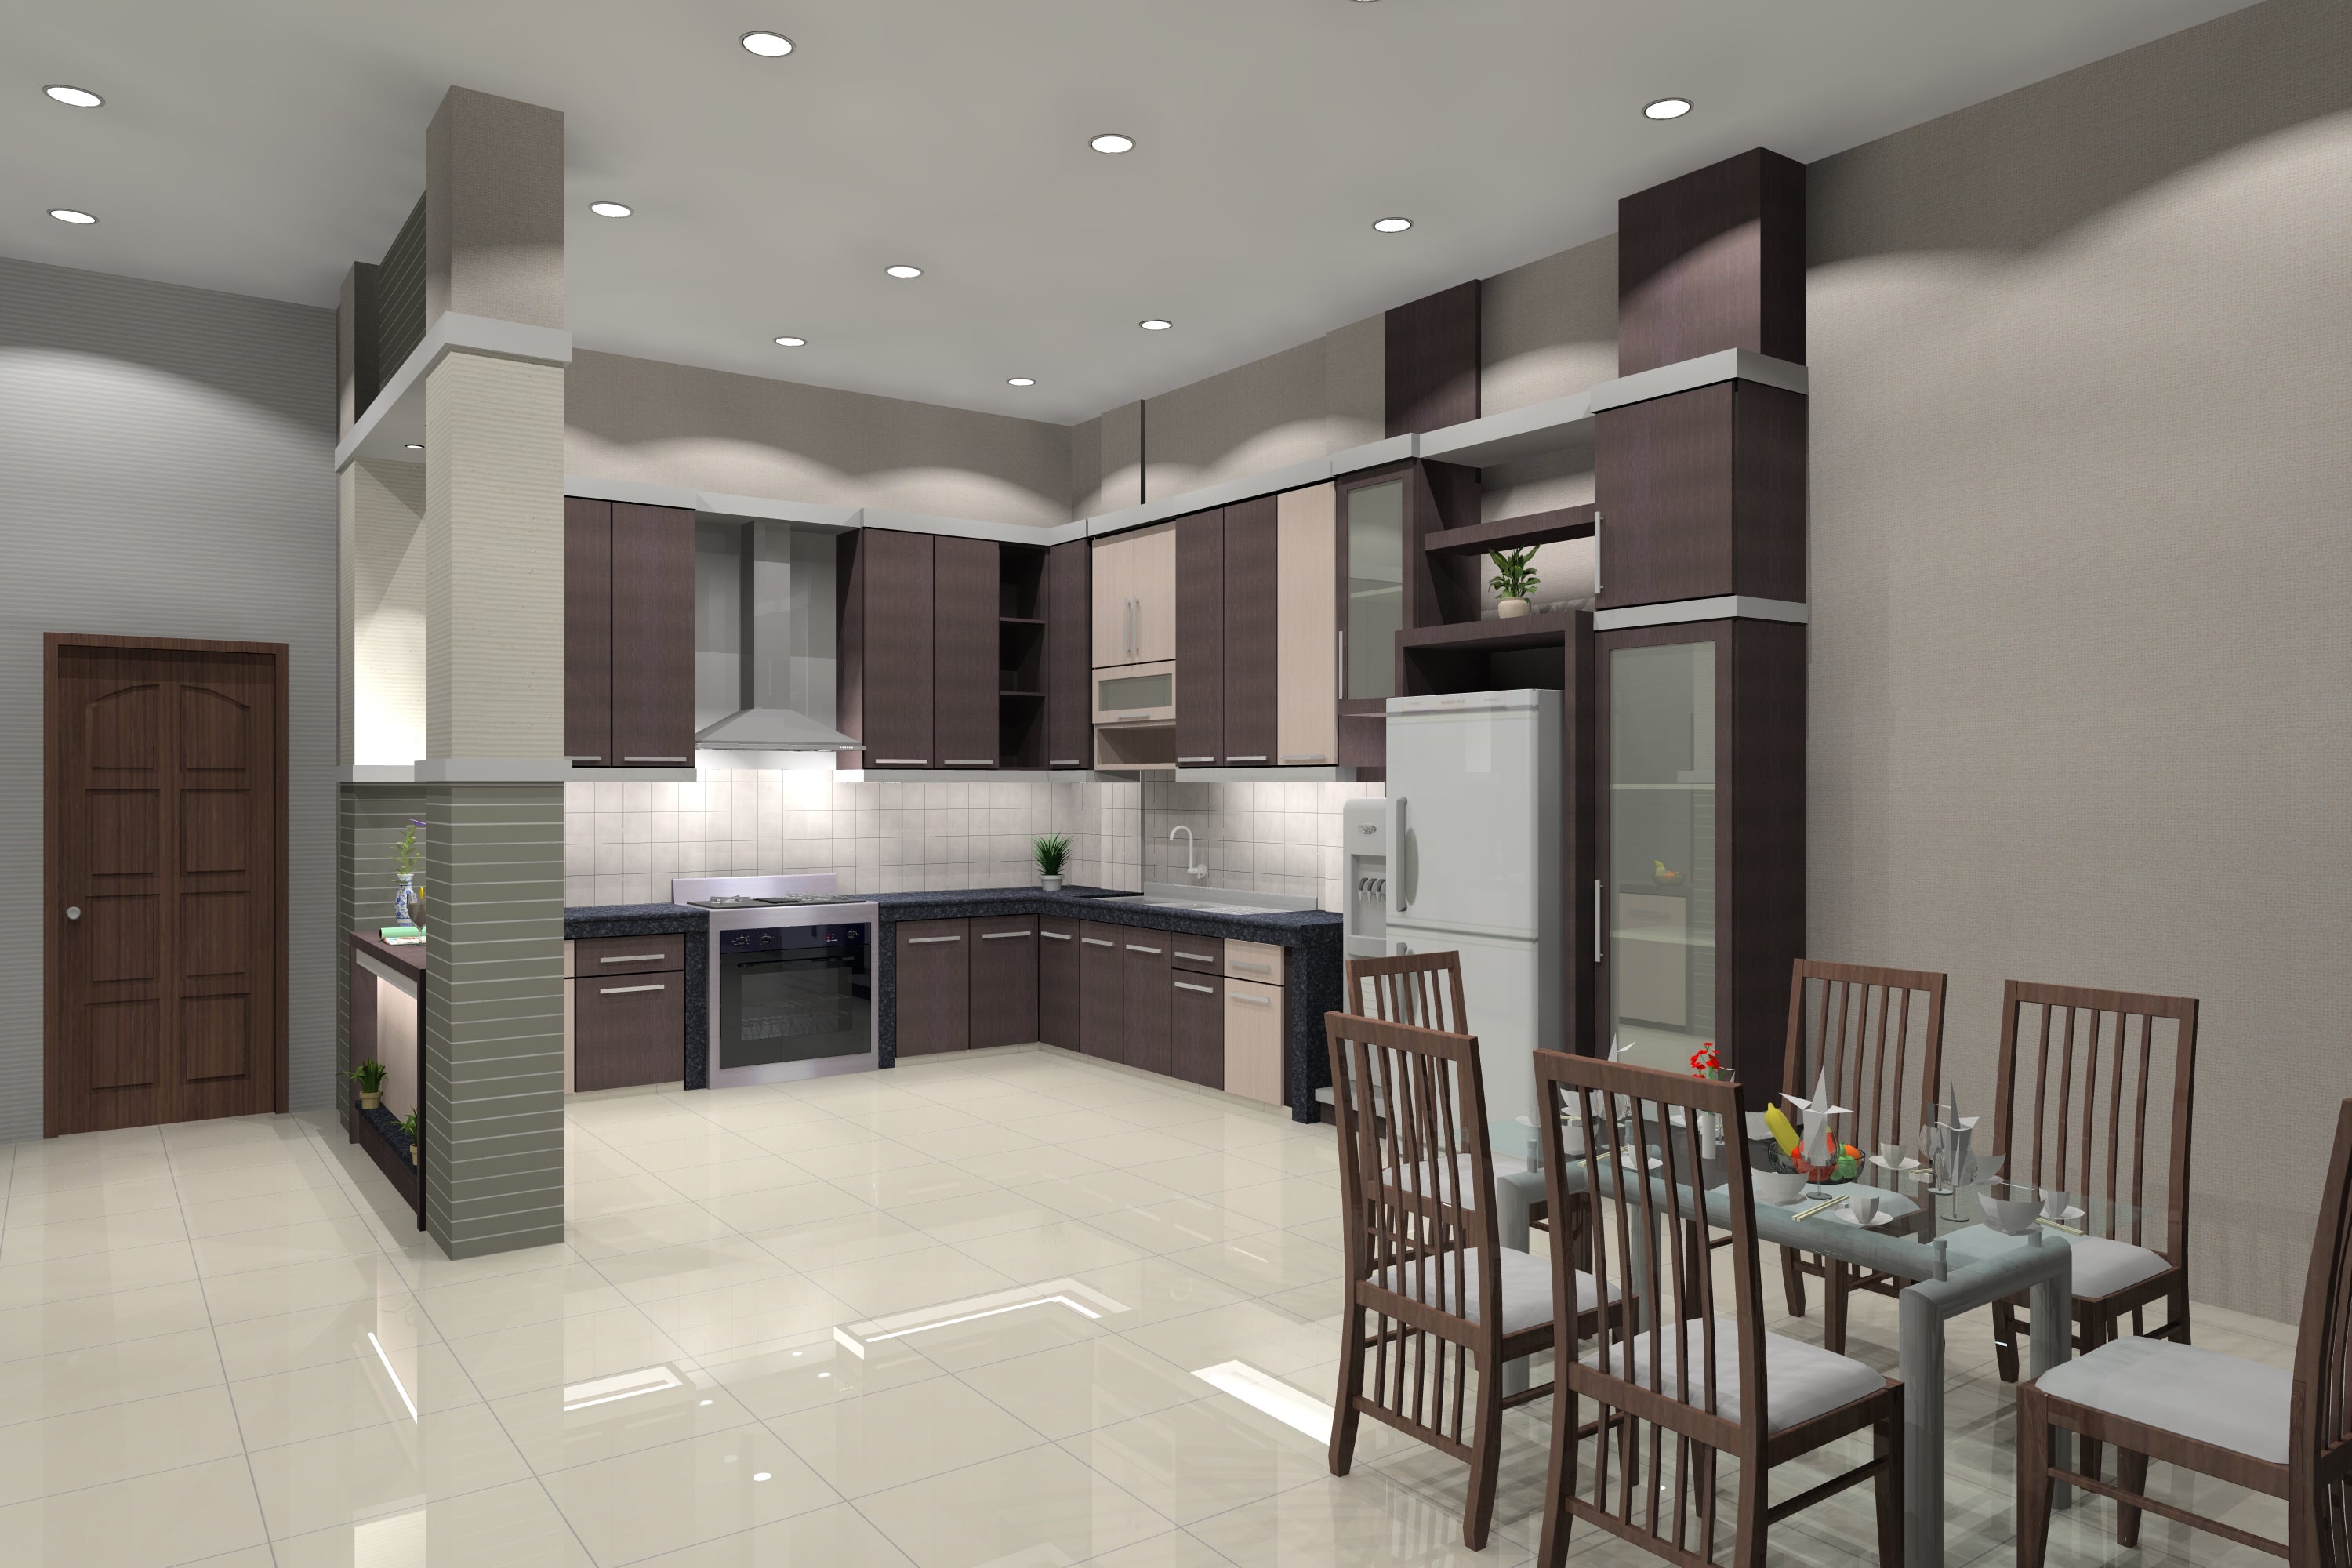 Imut Desain Interior Rumah Yang Bagus 32 Untuk Ide Dekorasi Rumah dengan Desain Interior Rumah Yang Bagus